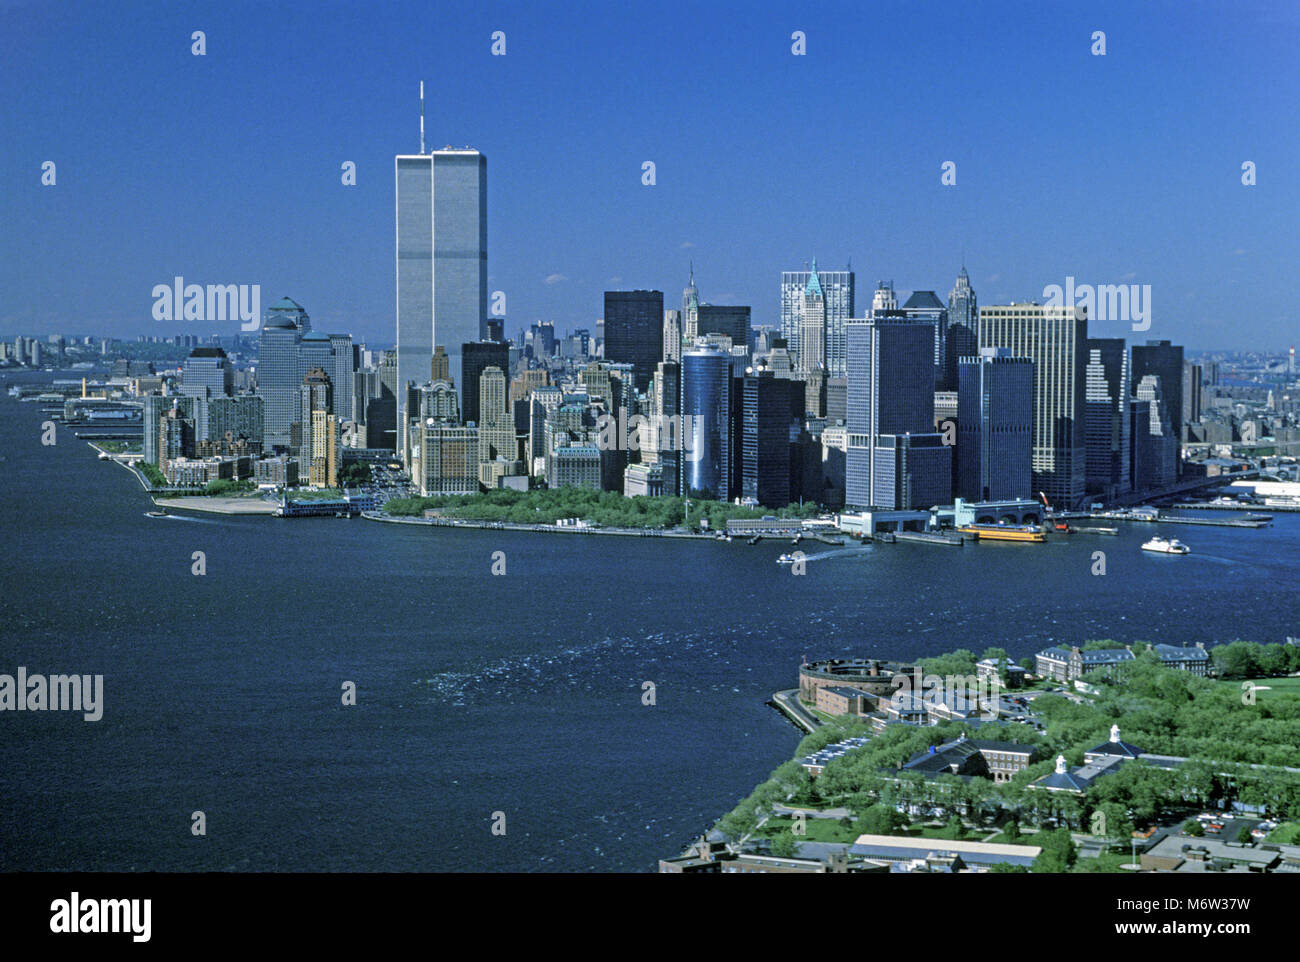 1995 TWIN TOWERS AÉRIENNES HISTORIQUES (©MINORU YAMASAKI 1973) LE CENTRE-VILLE DE LA BAIE D'HUDSON MANHATTAN NEW YORK USA Banque D'Images